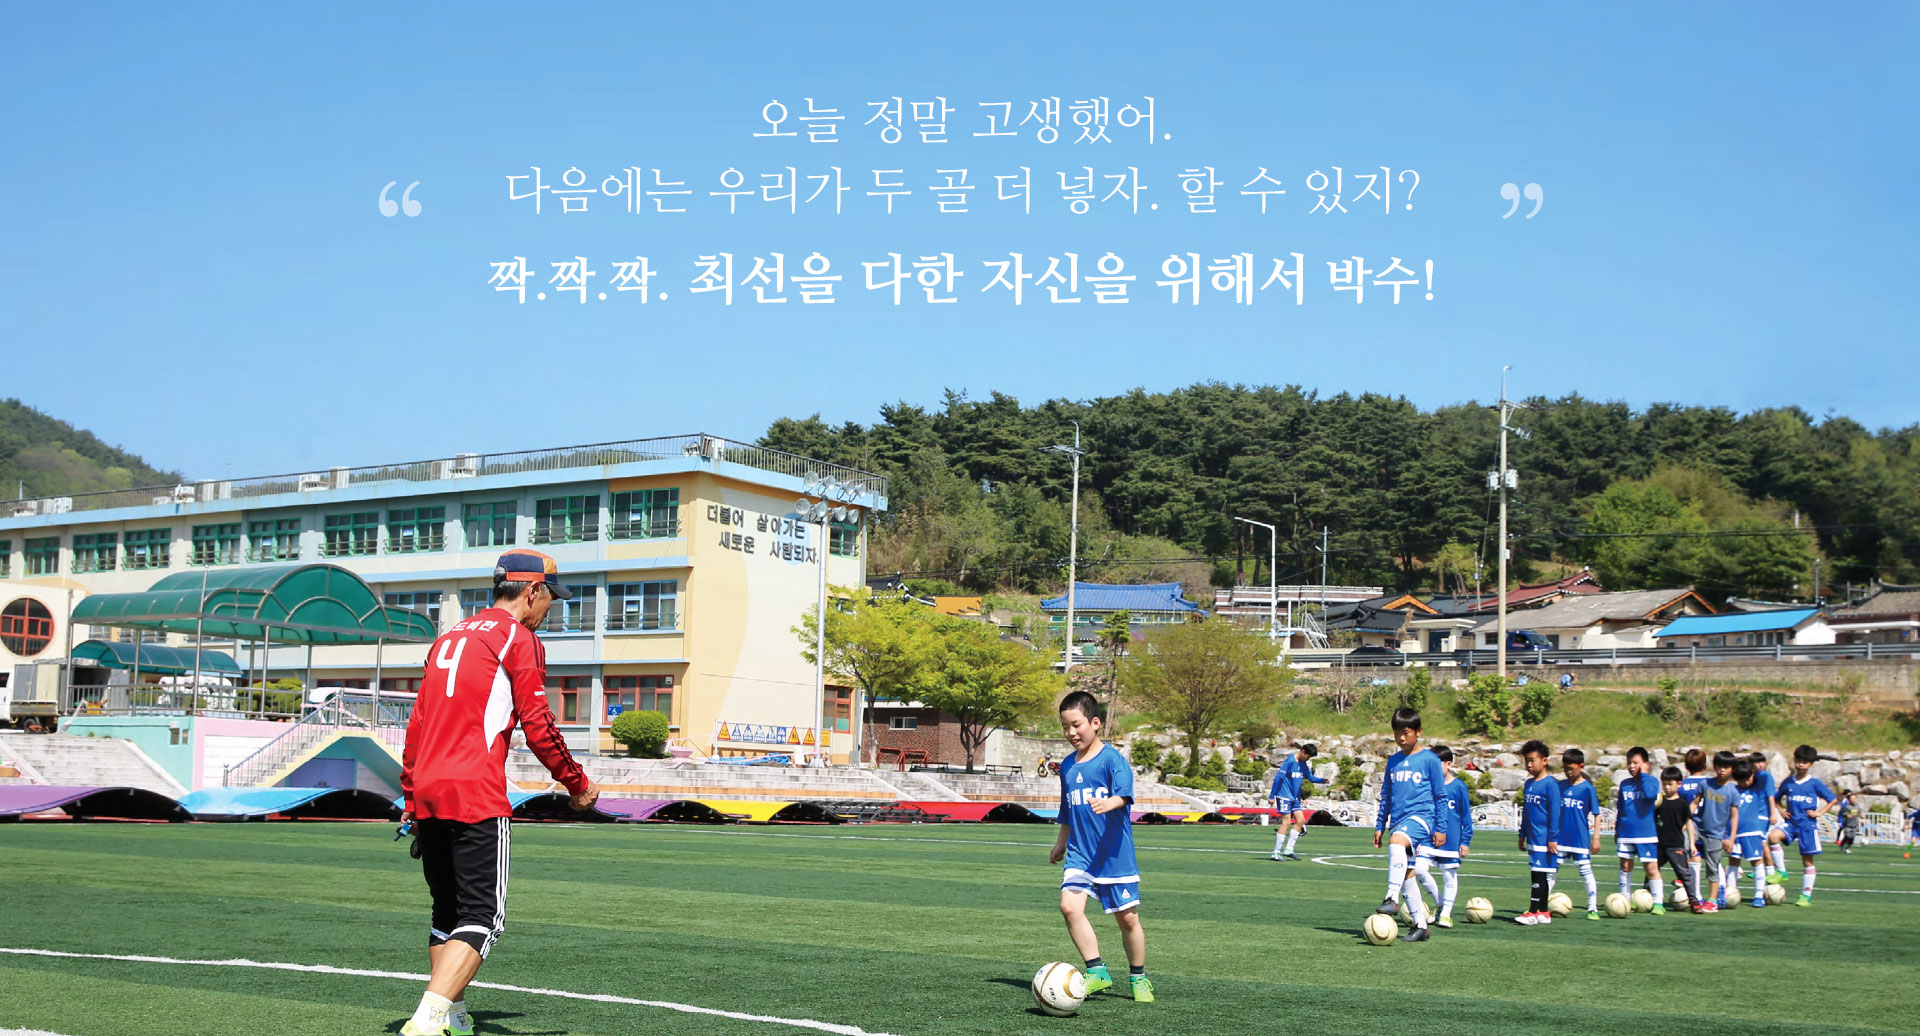 201806_story_magazine_soccer_00